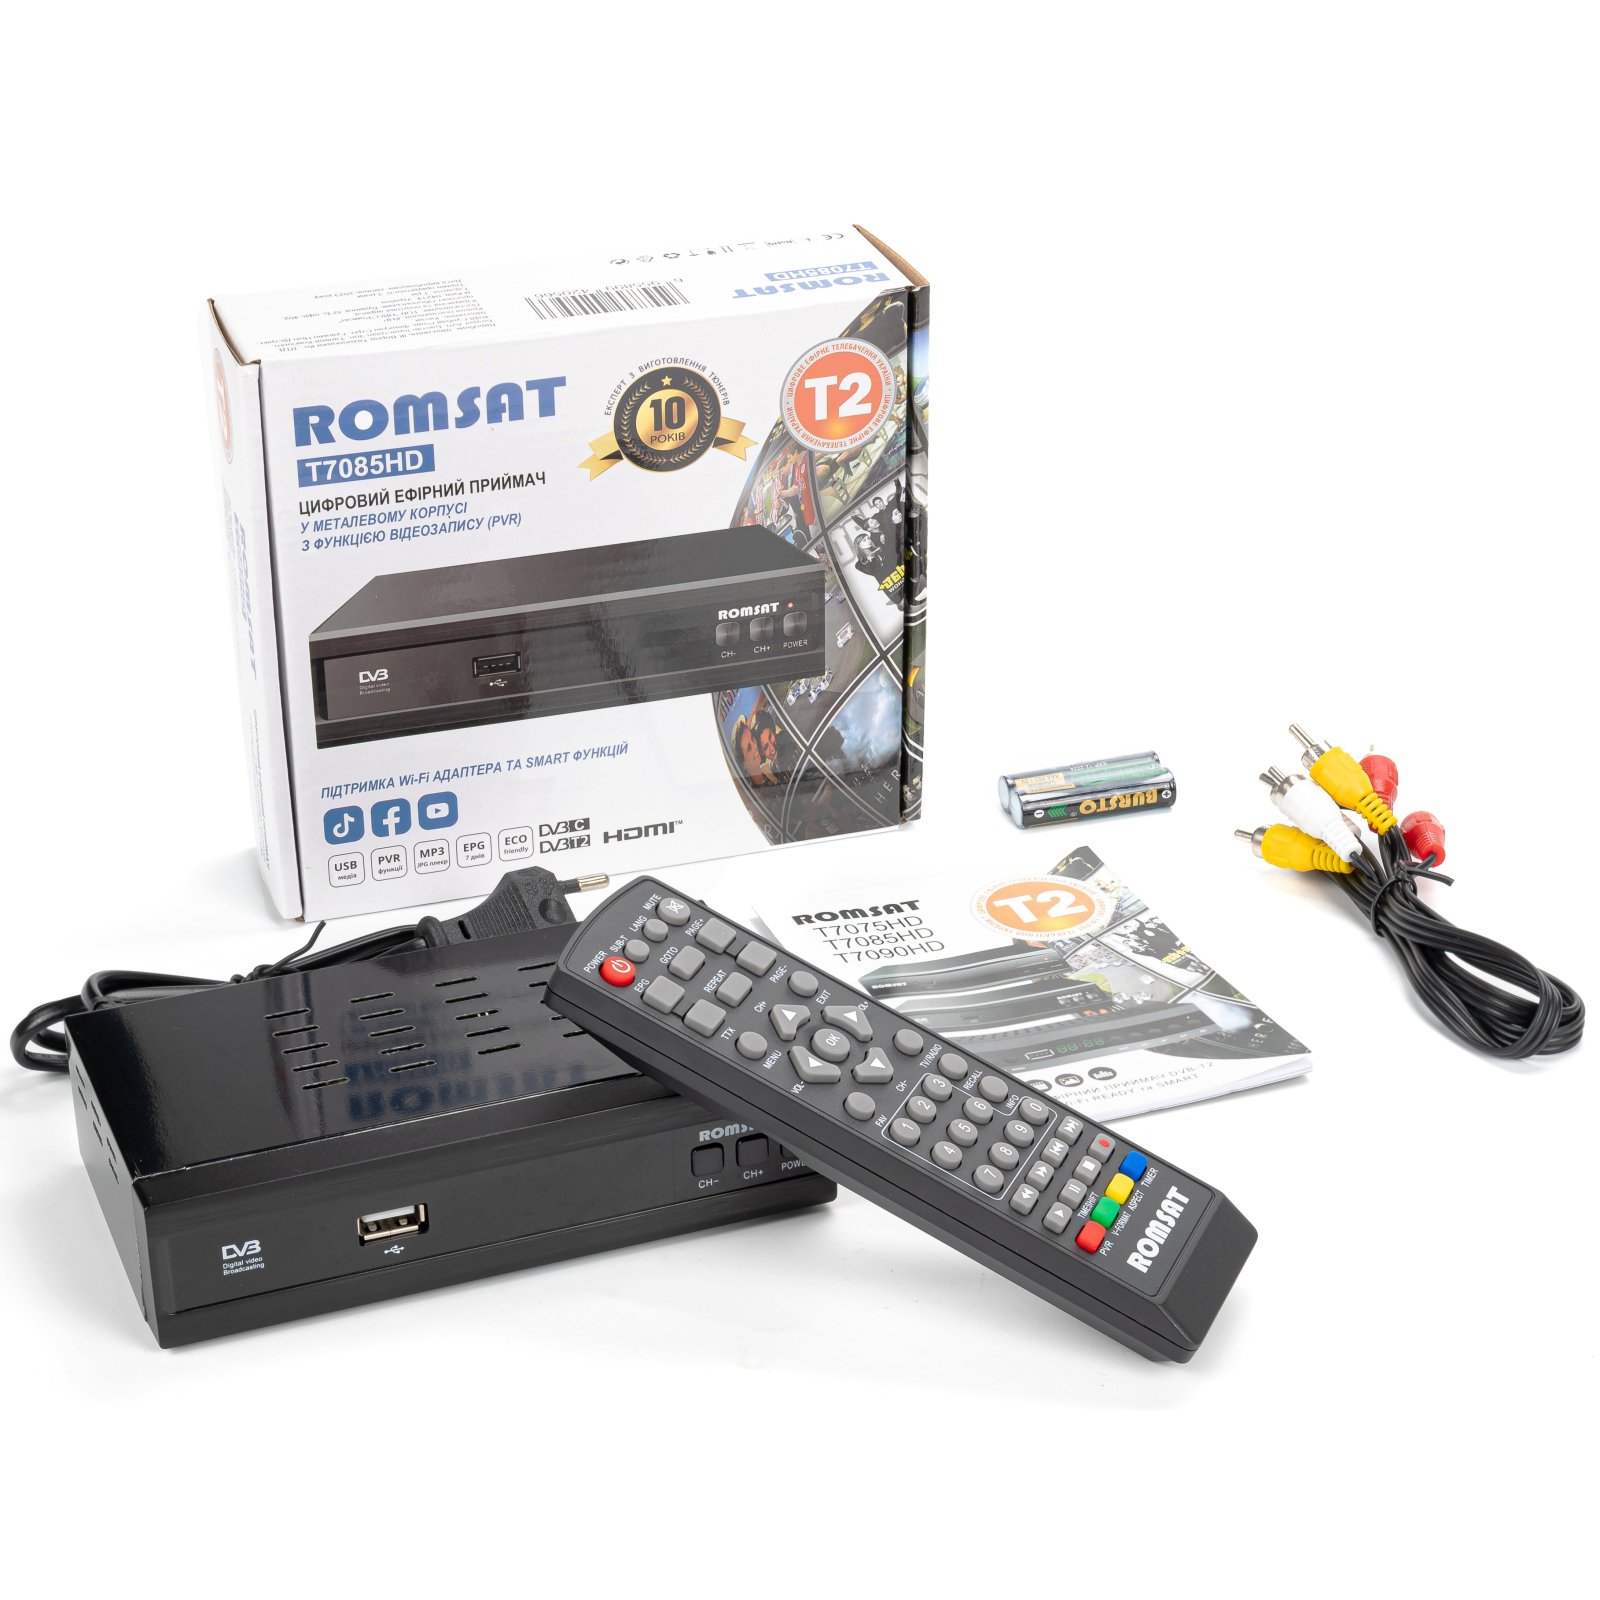 ТВ тюнер Romsat DVB-T2 (T7085HD) изображение 7